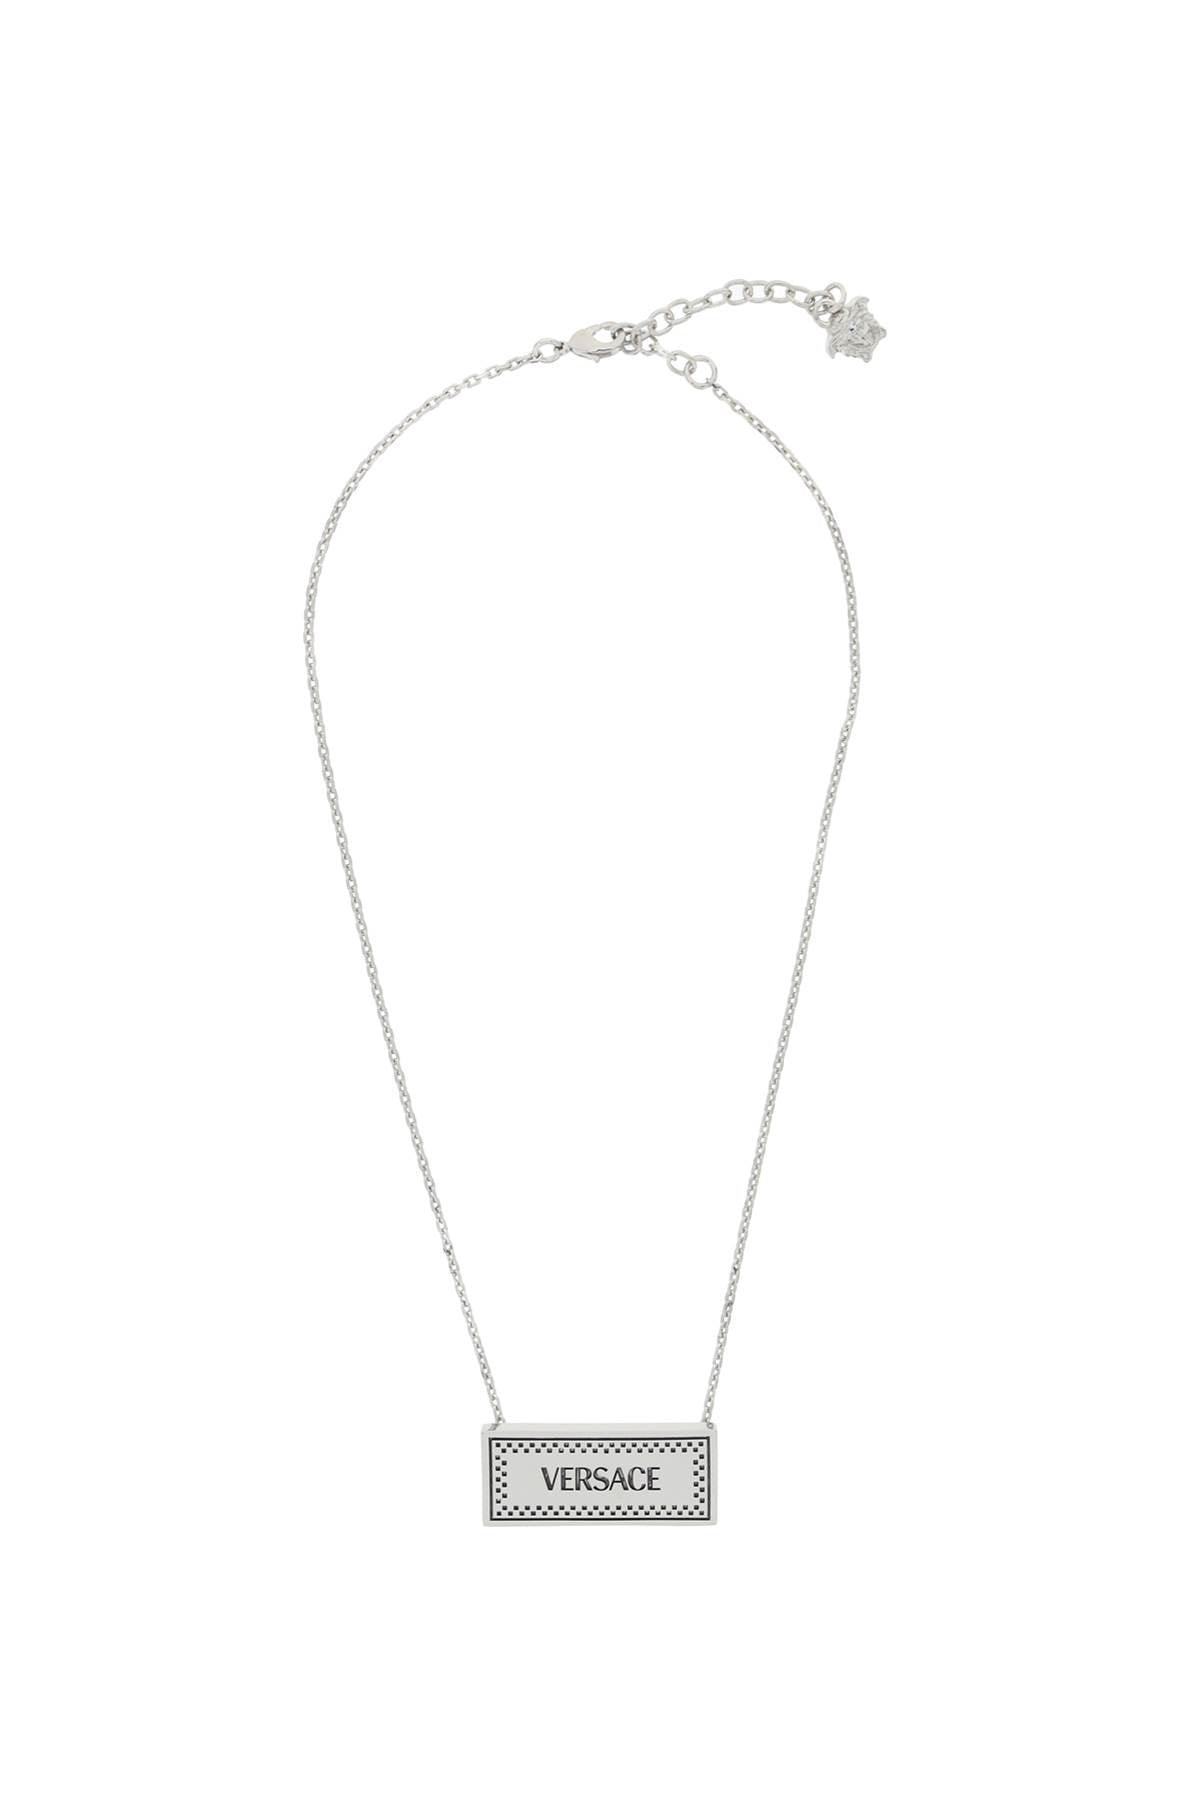 Versace 90's Vintage Logo Necklace   Silver